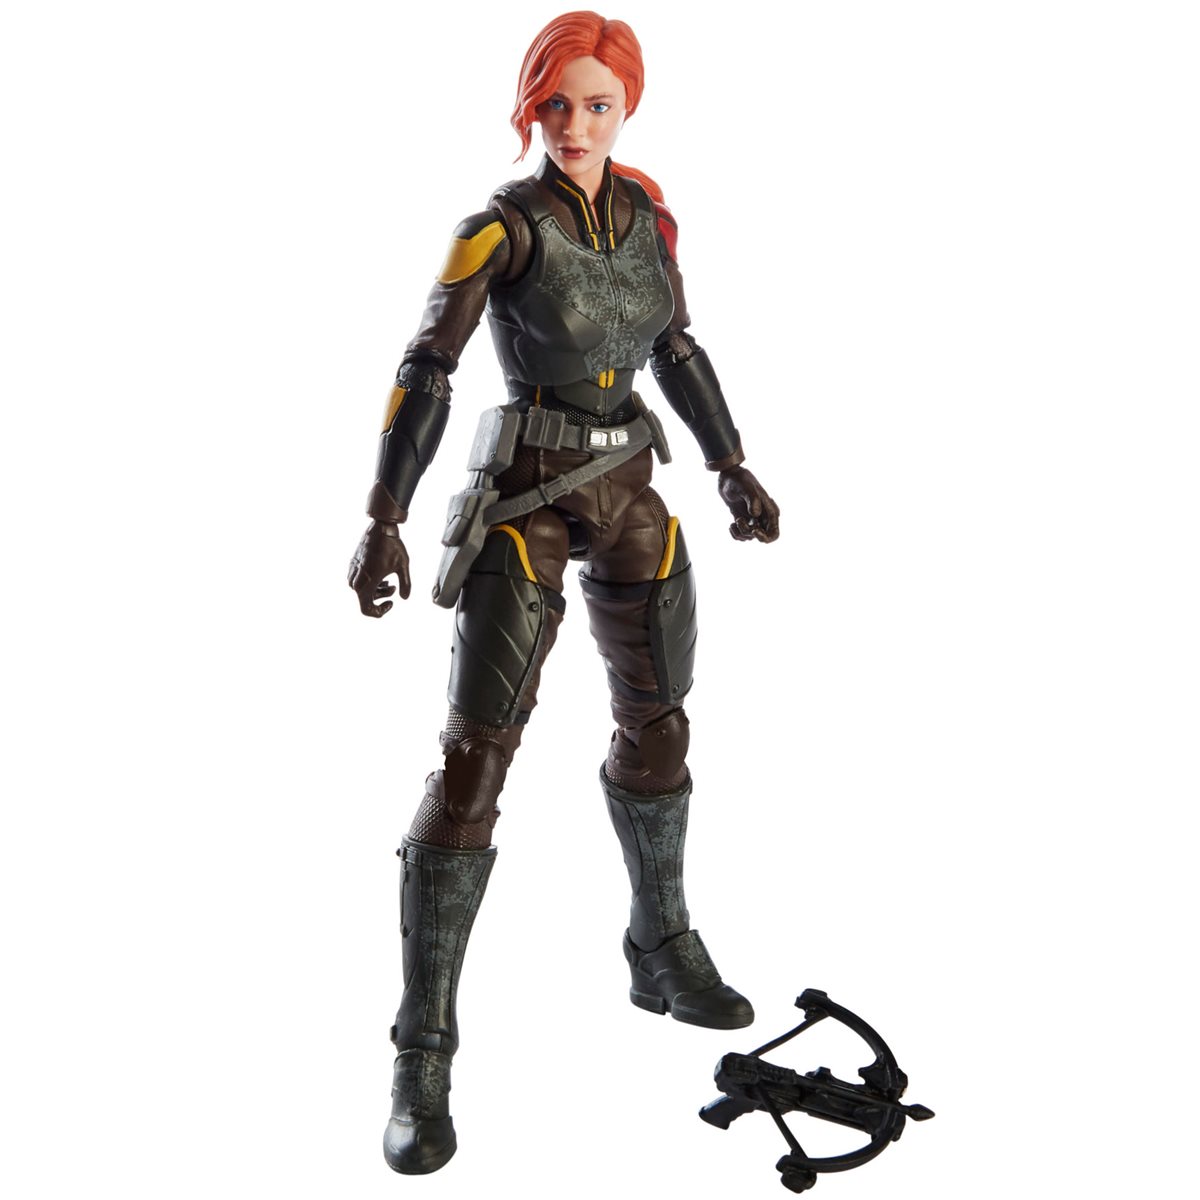 Hasbro Gi Joe Classified 6" Scarlett Action Figure for sale online